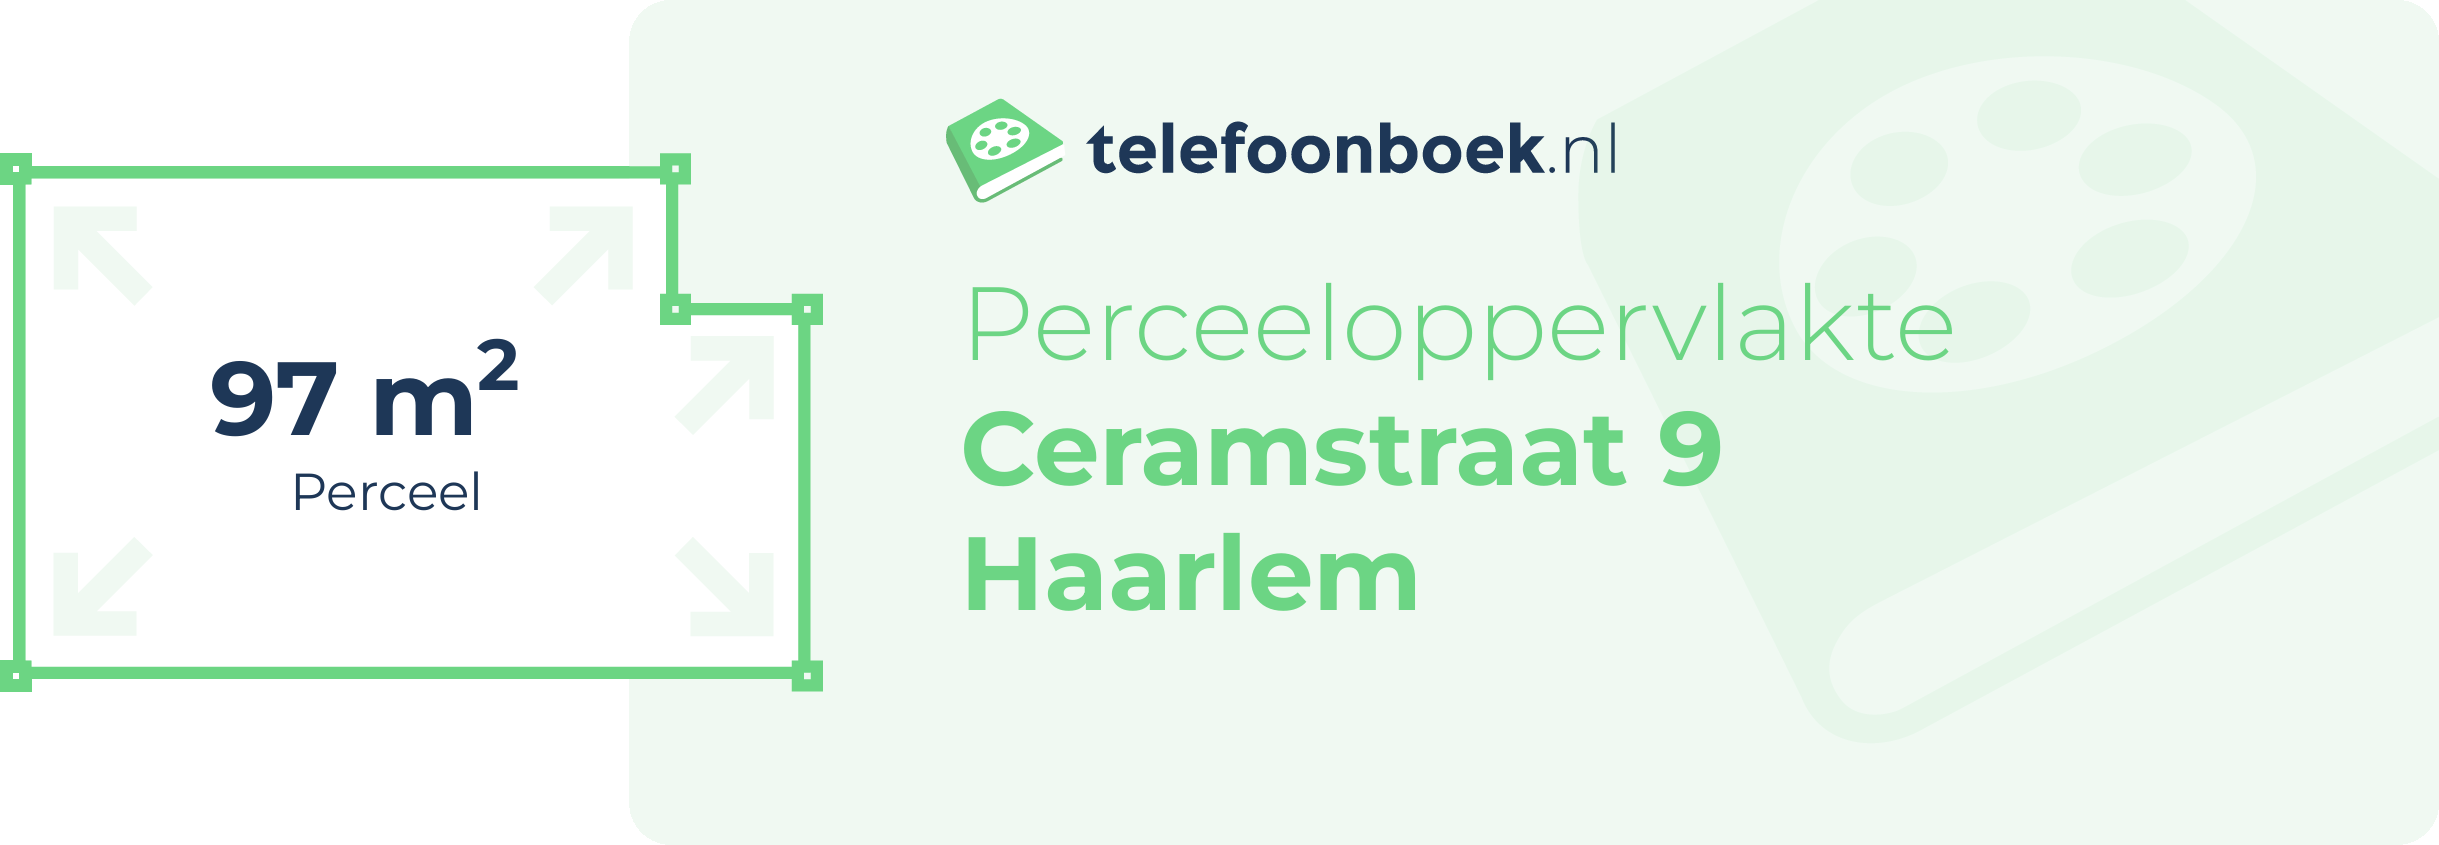 Perceeloppervlakte Ceramstraat 9 Haarlem